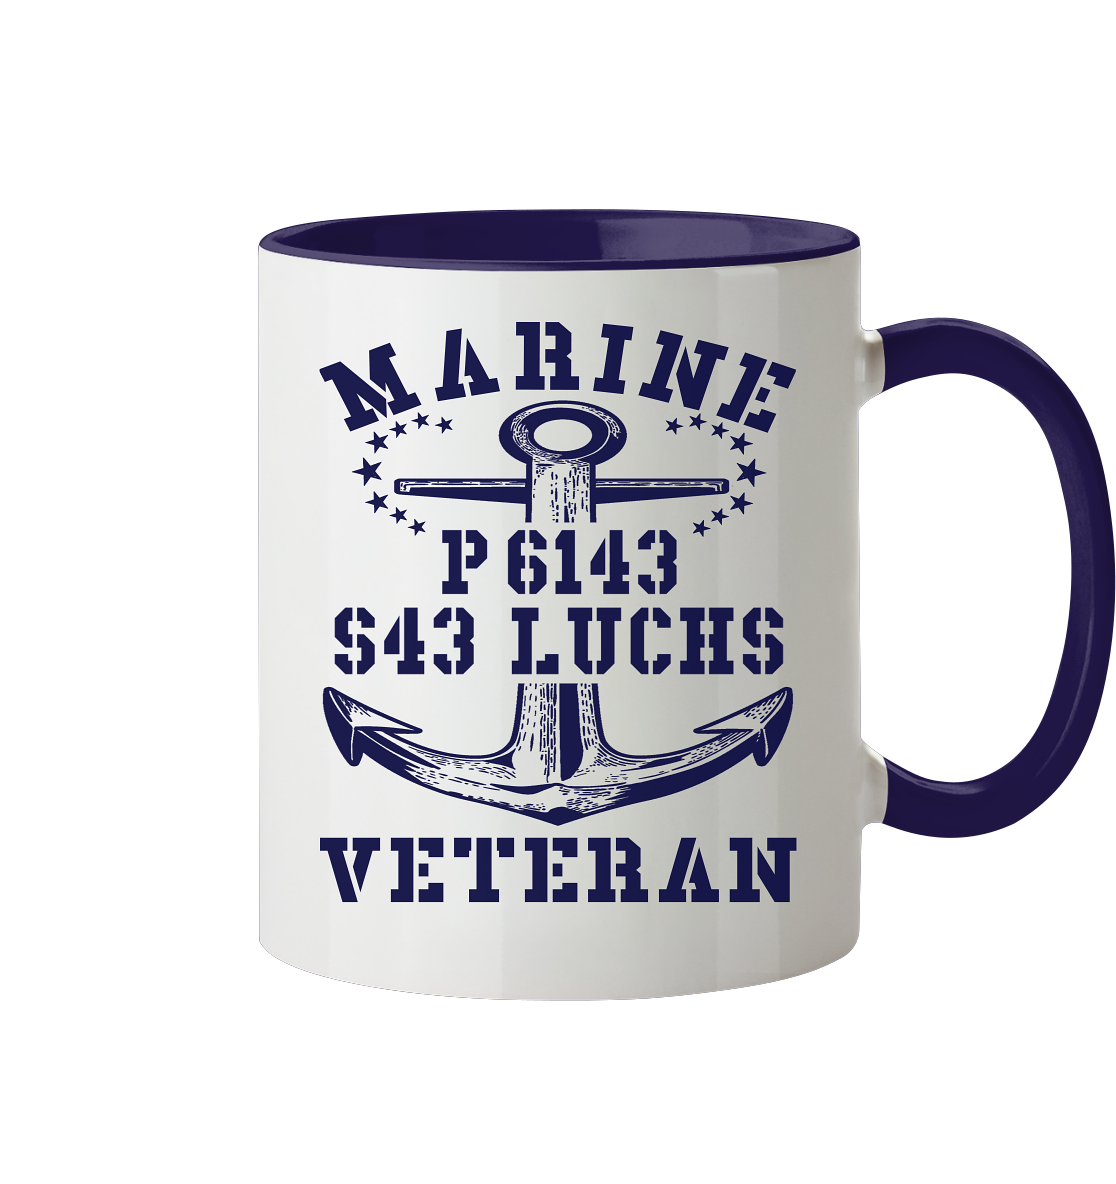 P6143 S43 LUCHS Marine Veteran - Tasse zweifarbig